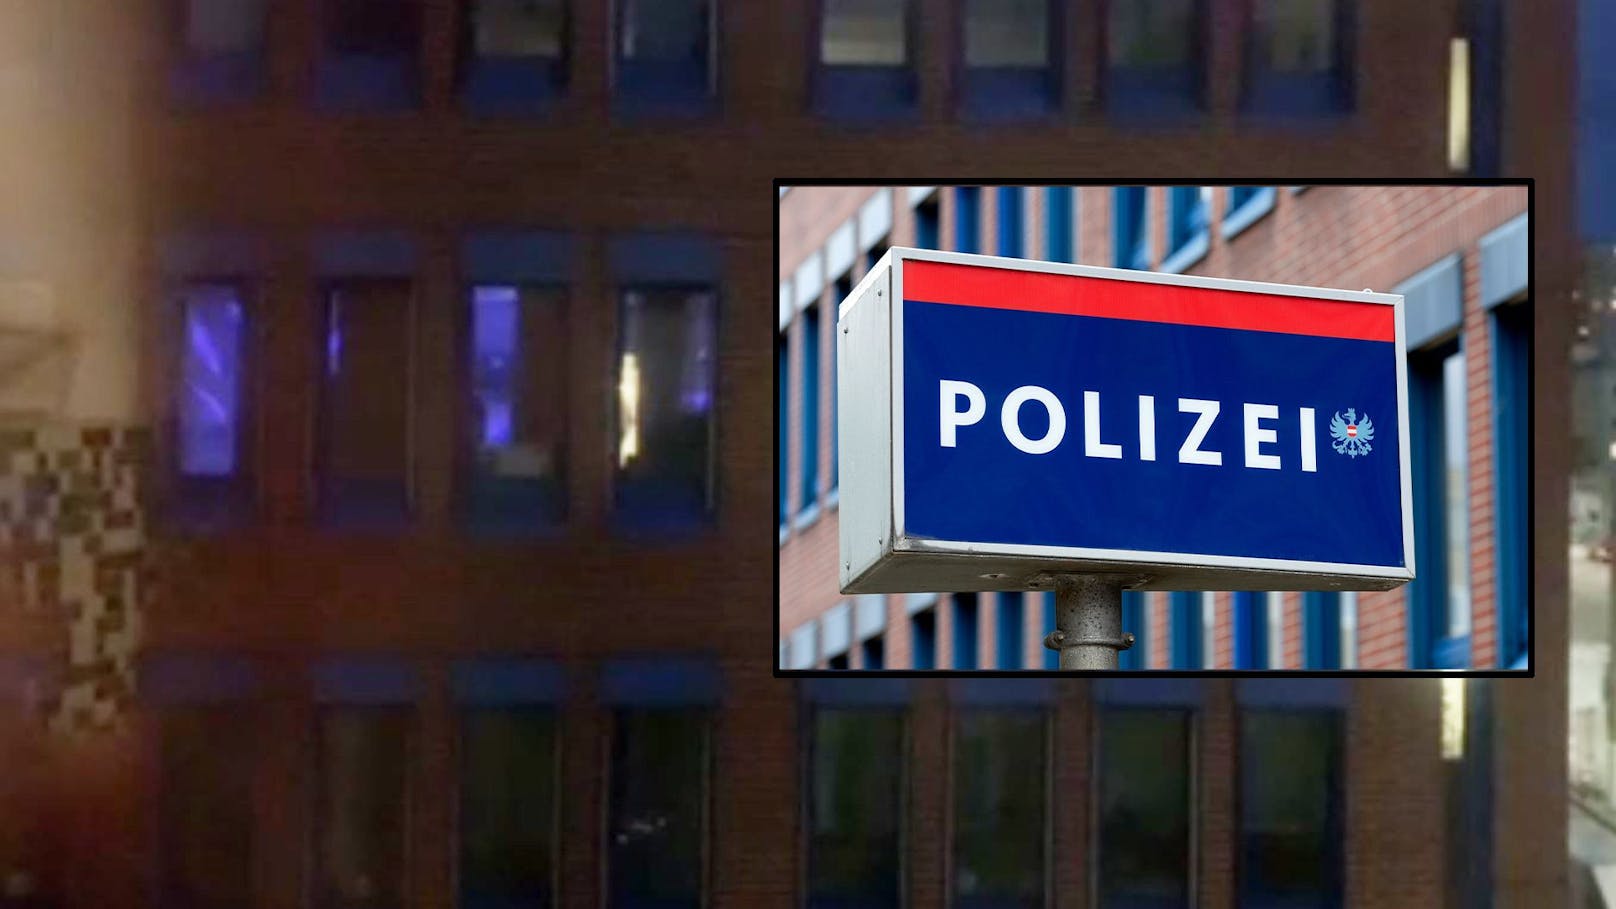 Polizei-Party? Disco-Lichter in Wiener Kommissariat – Leser